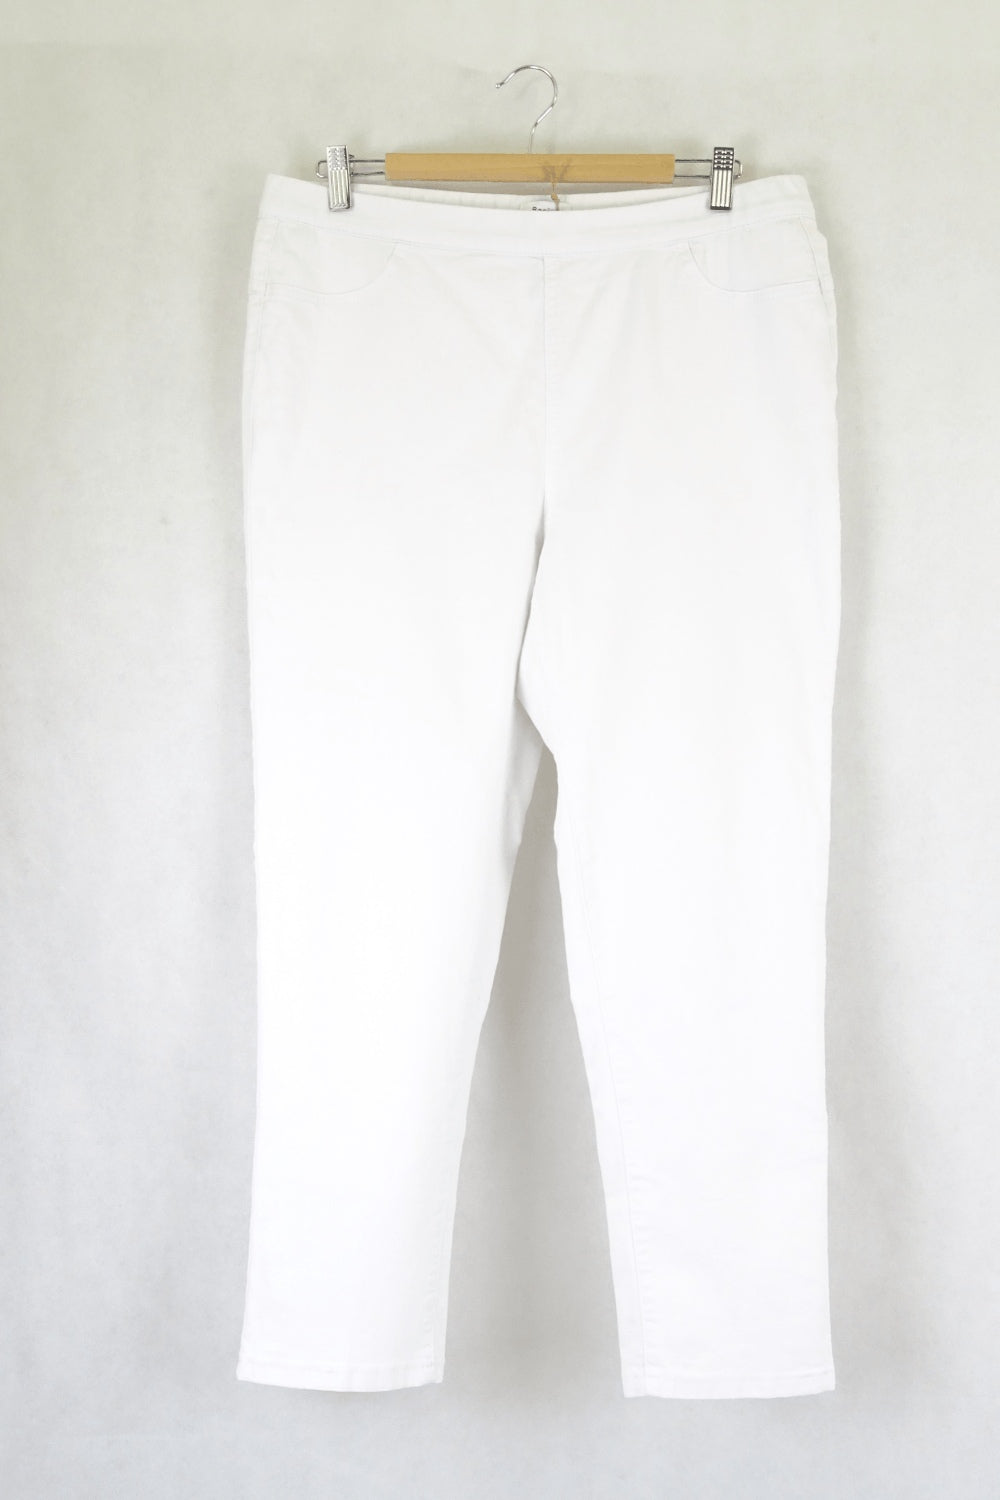 Basics White Pants L